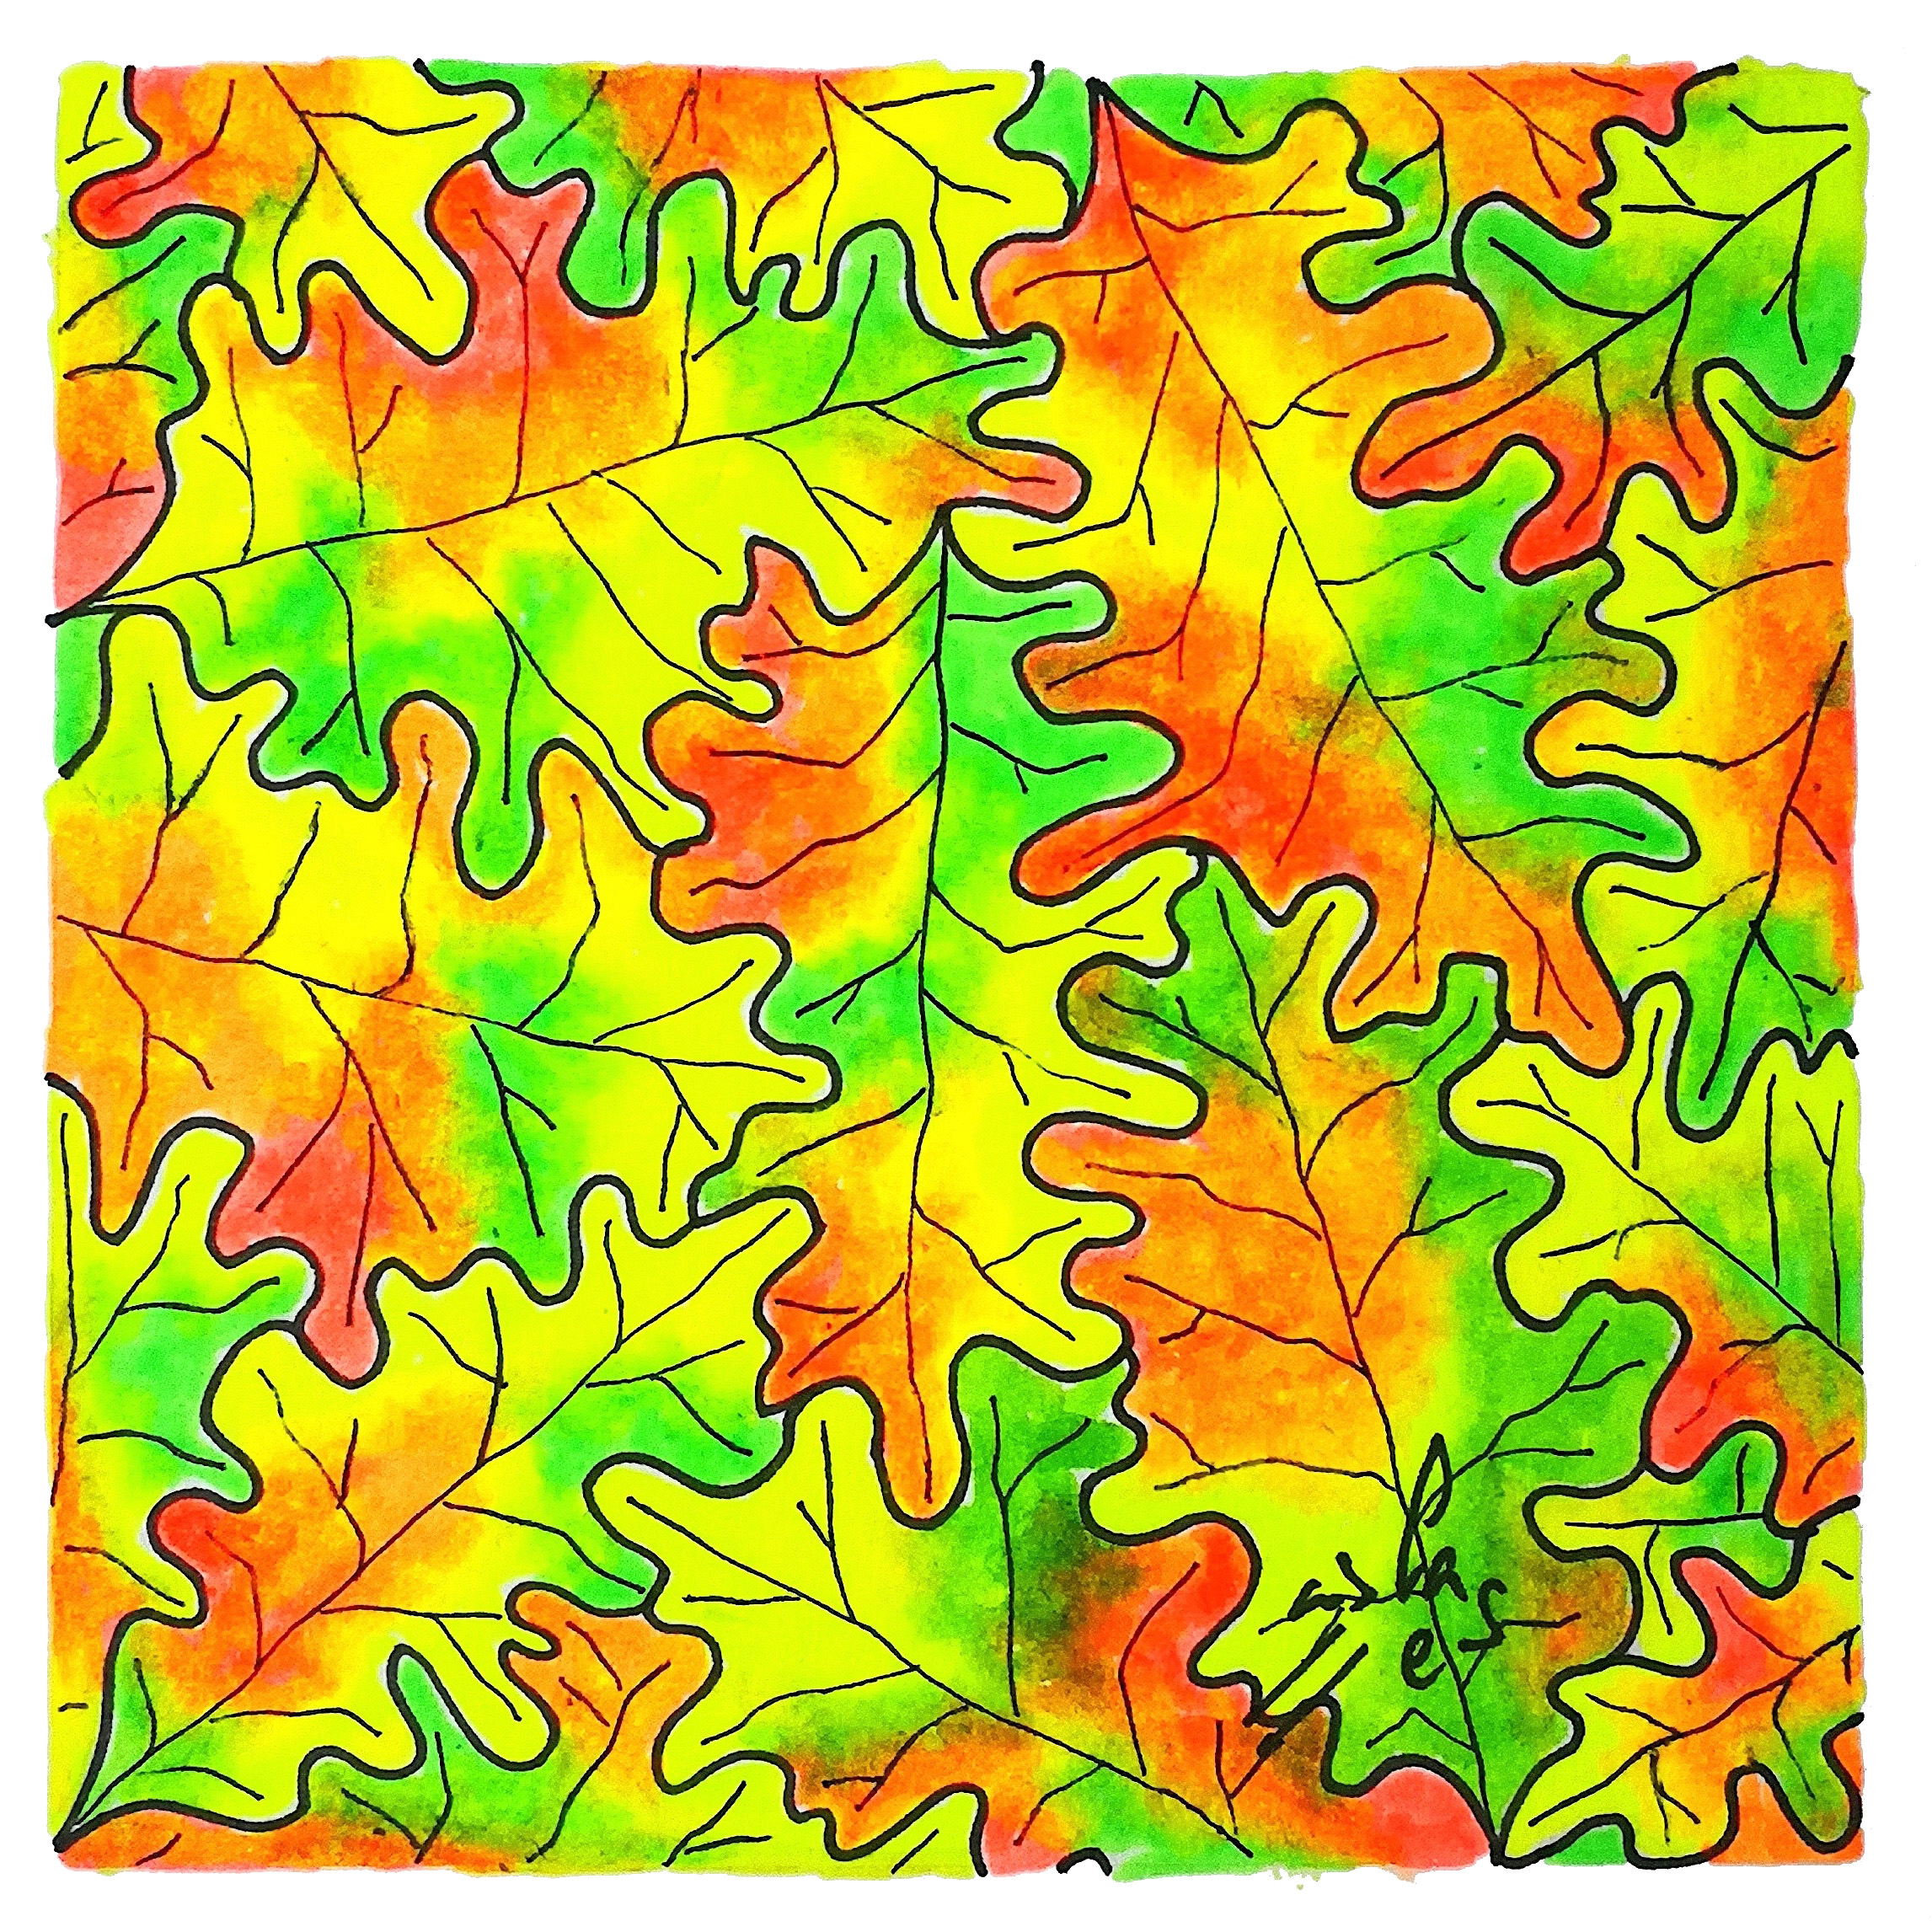 Puzle otoñal de hojas de roble, Vicky Casellas, Ilustración fluorescente